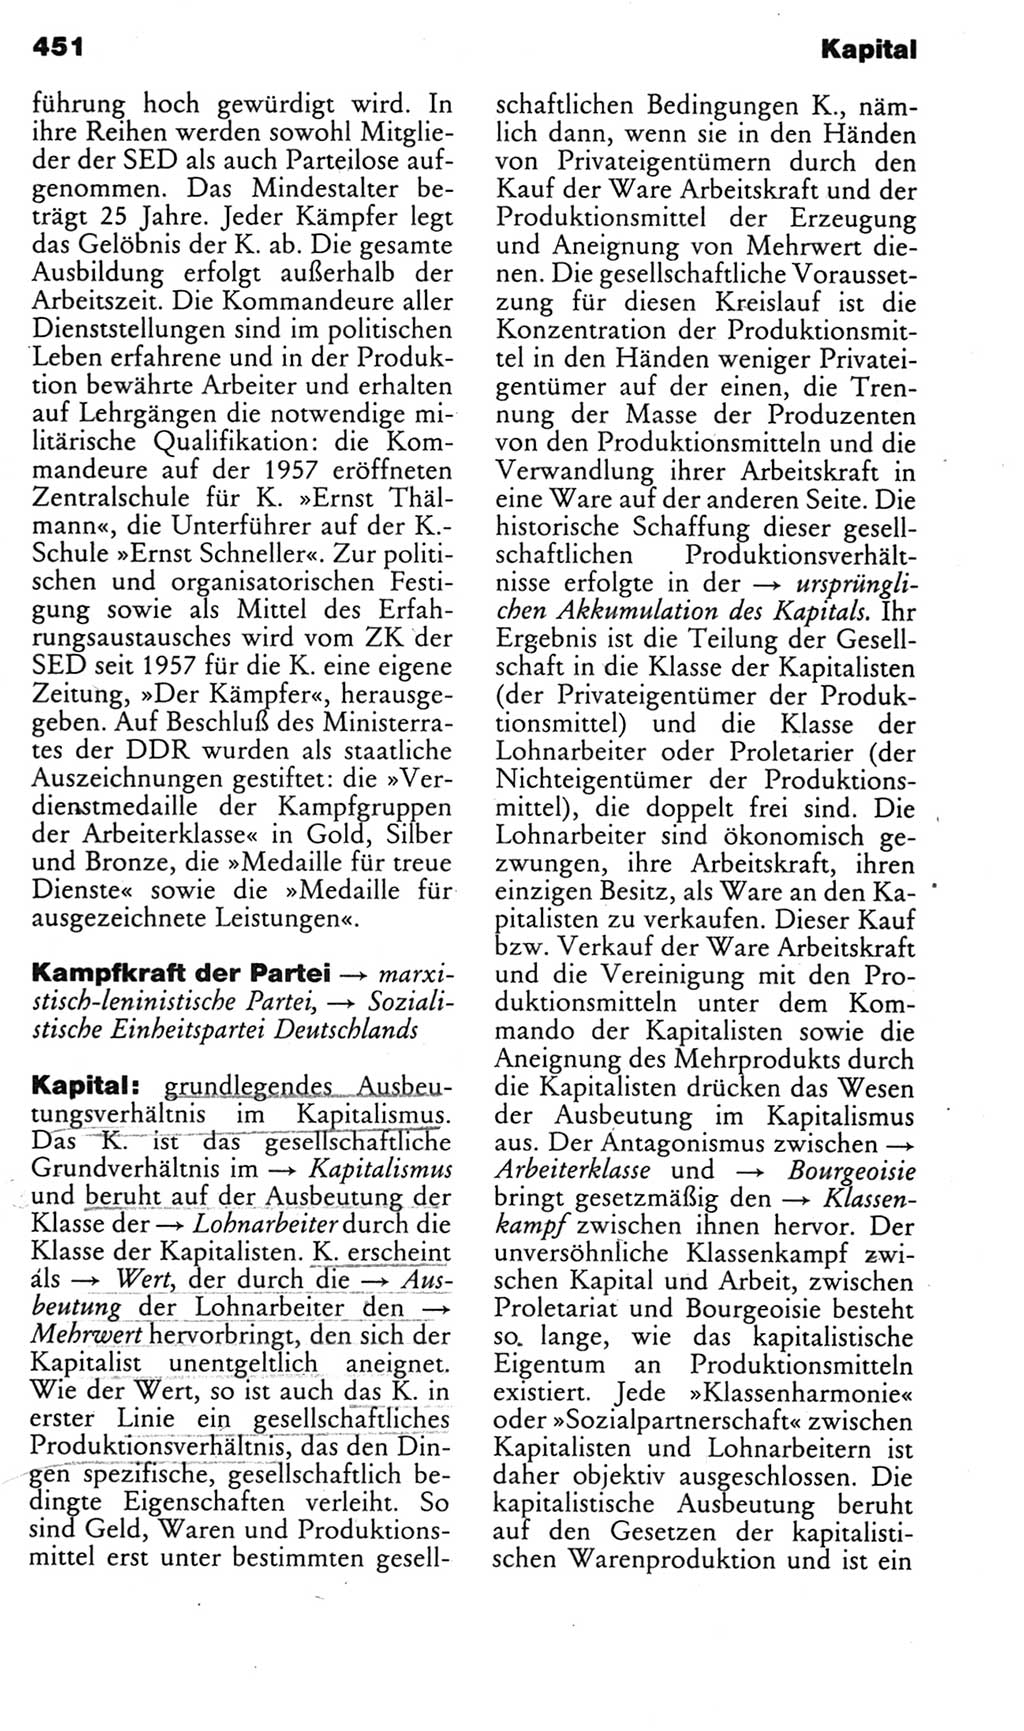 Kleines politisches Wörterbuch [Deutsche Demokratische Republik (DDR)] 1985, Seite 451 (Kl. pol. Wb. DDR 1985, S. 451)